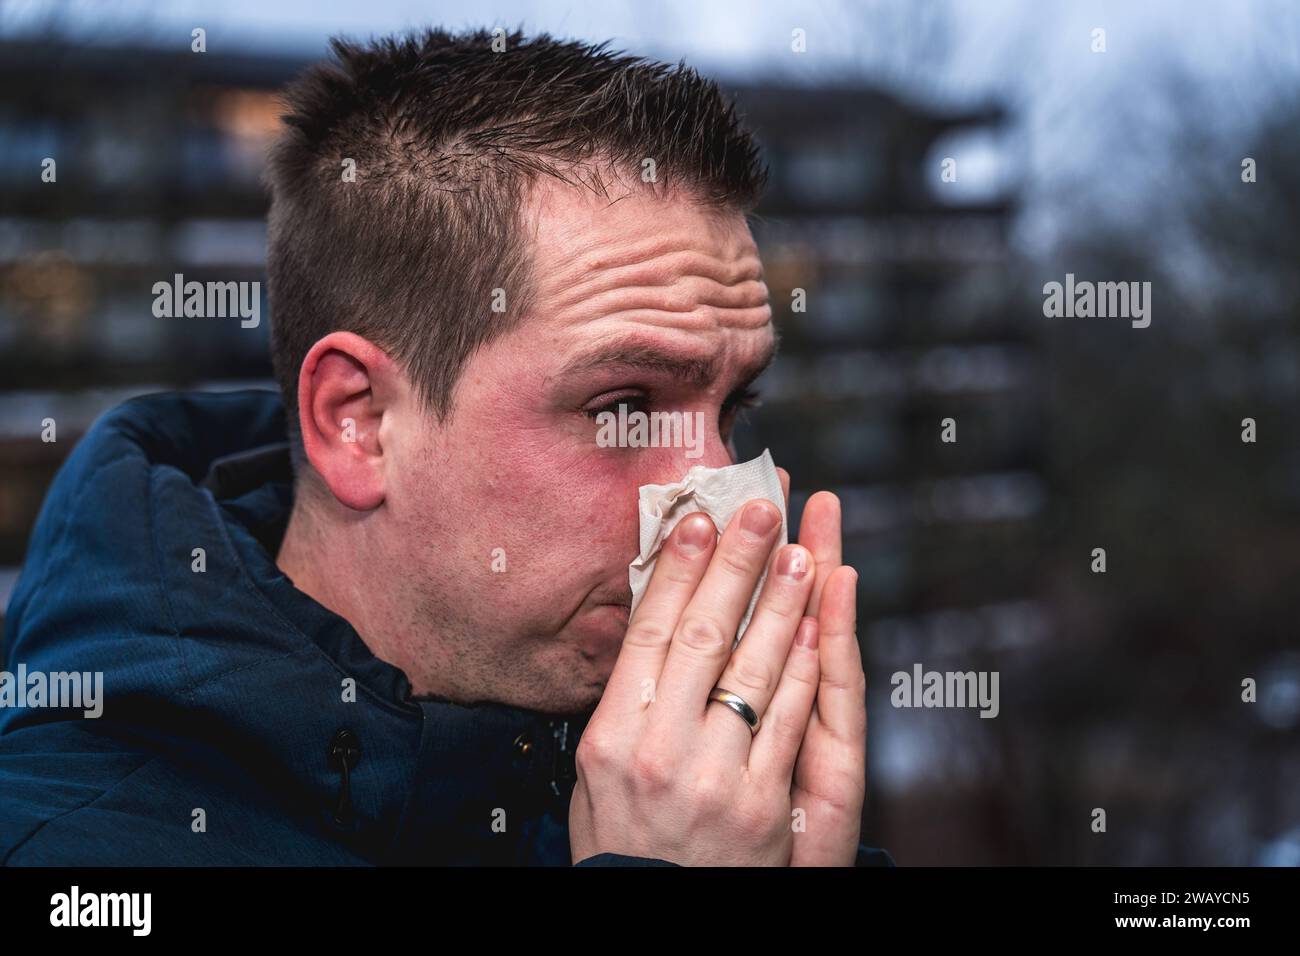 Bayern, Deutschland - 6. Januar 2024: Ein kranker Mann mit Erkältung bläst sich mit einem Papiertaschentuch die Nase *** ein kranker erkälteter Mann putzt sich mit einem Papiertaschentuch die Nase Stockfoto